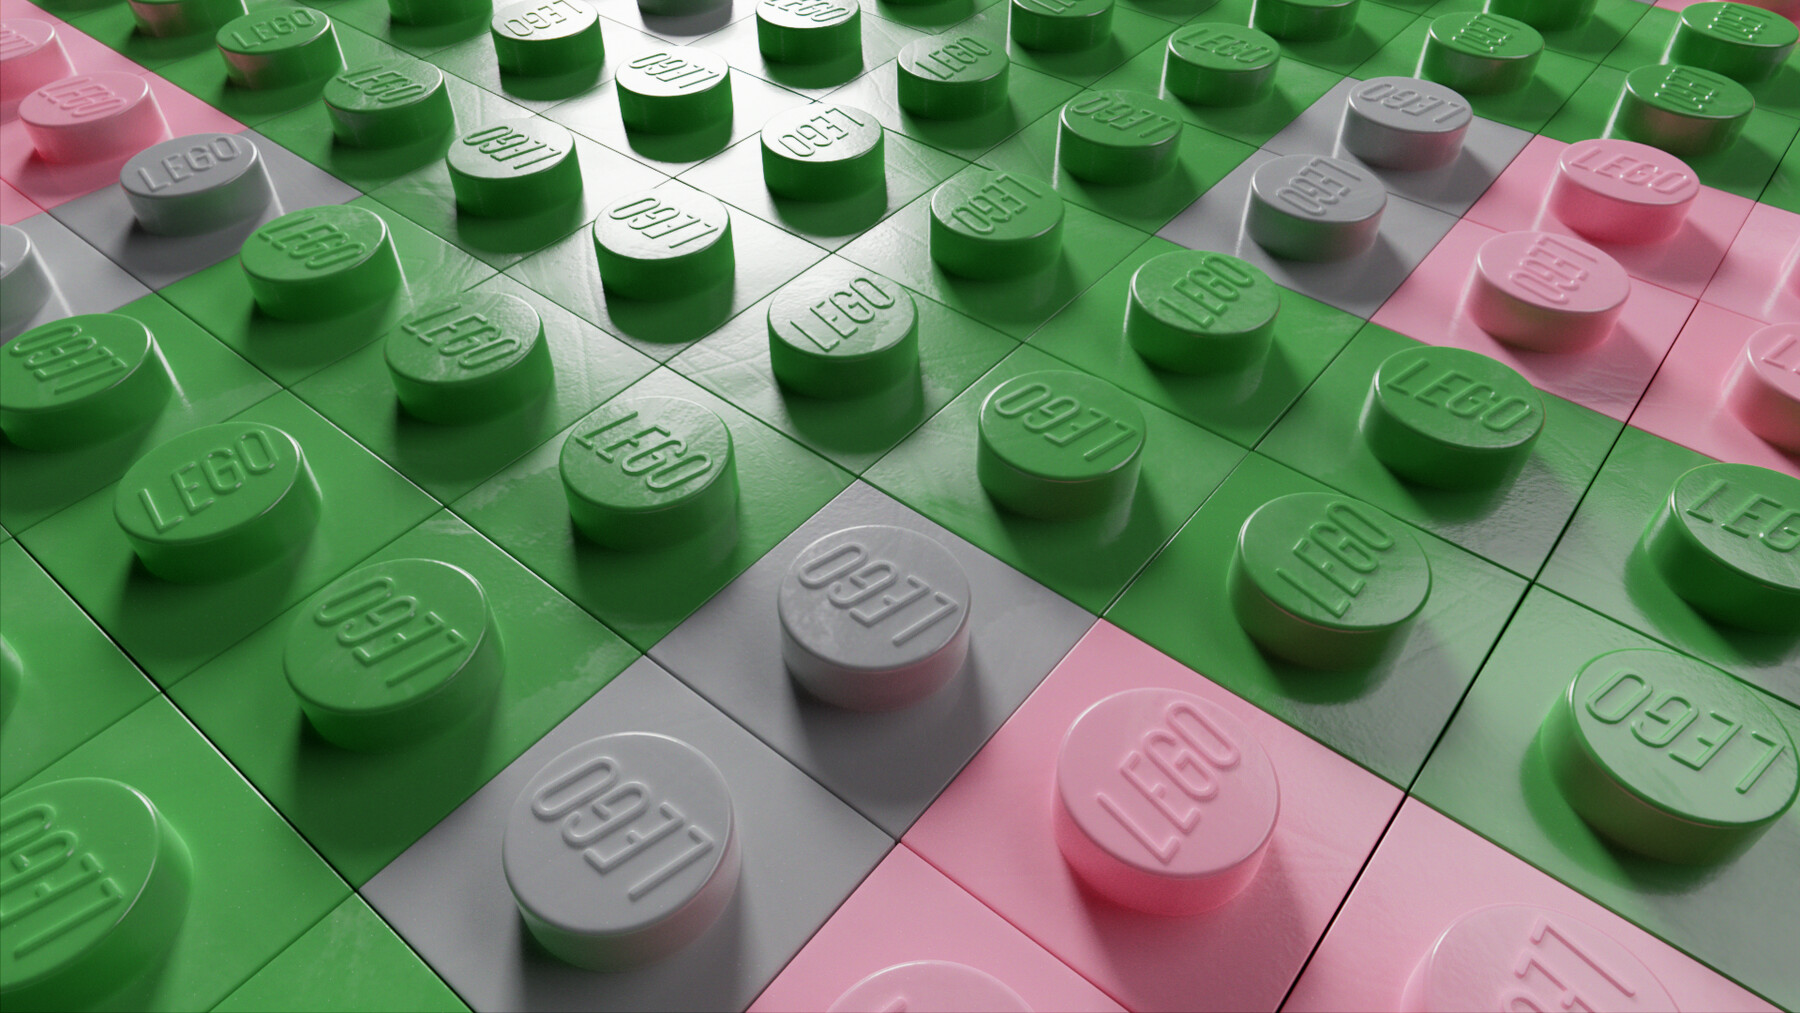 ArtStation - Lego Material for Blender